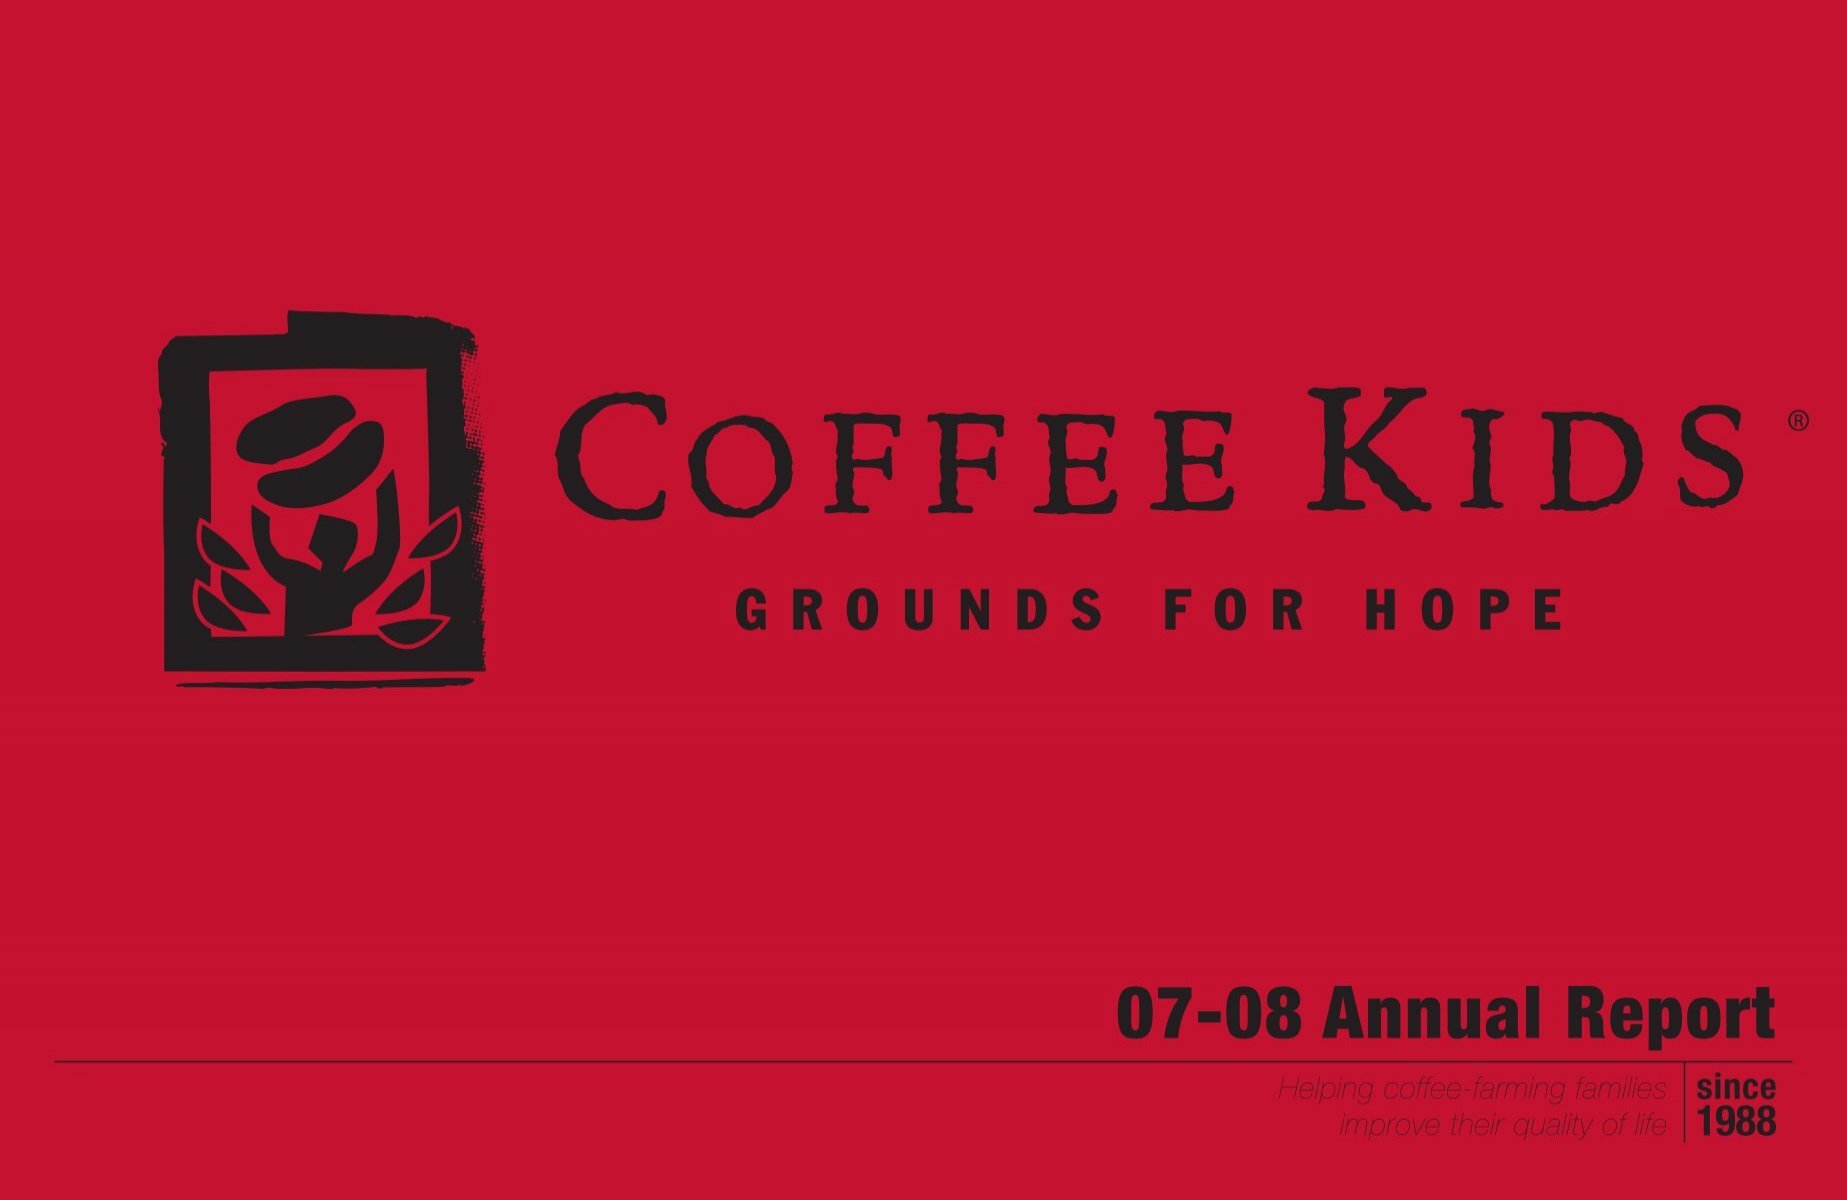 Vuggeviser Rådne romanforfatter 07-08 Annual Report - Coffee Kids